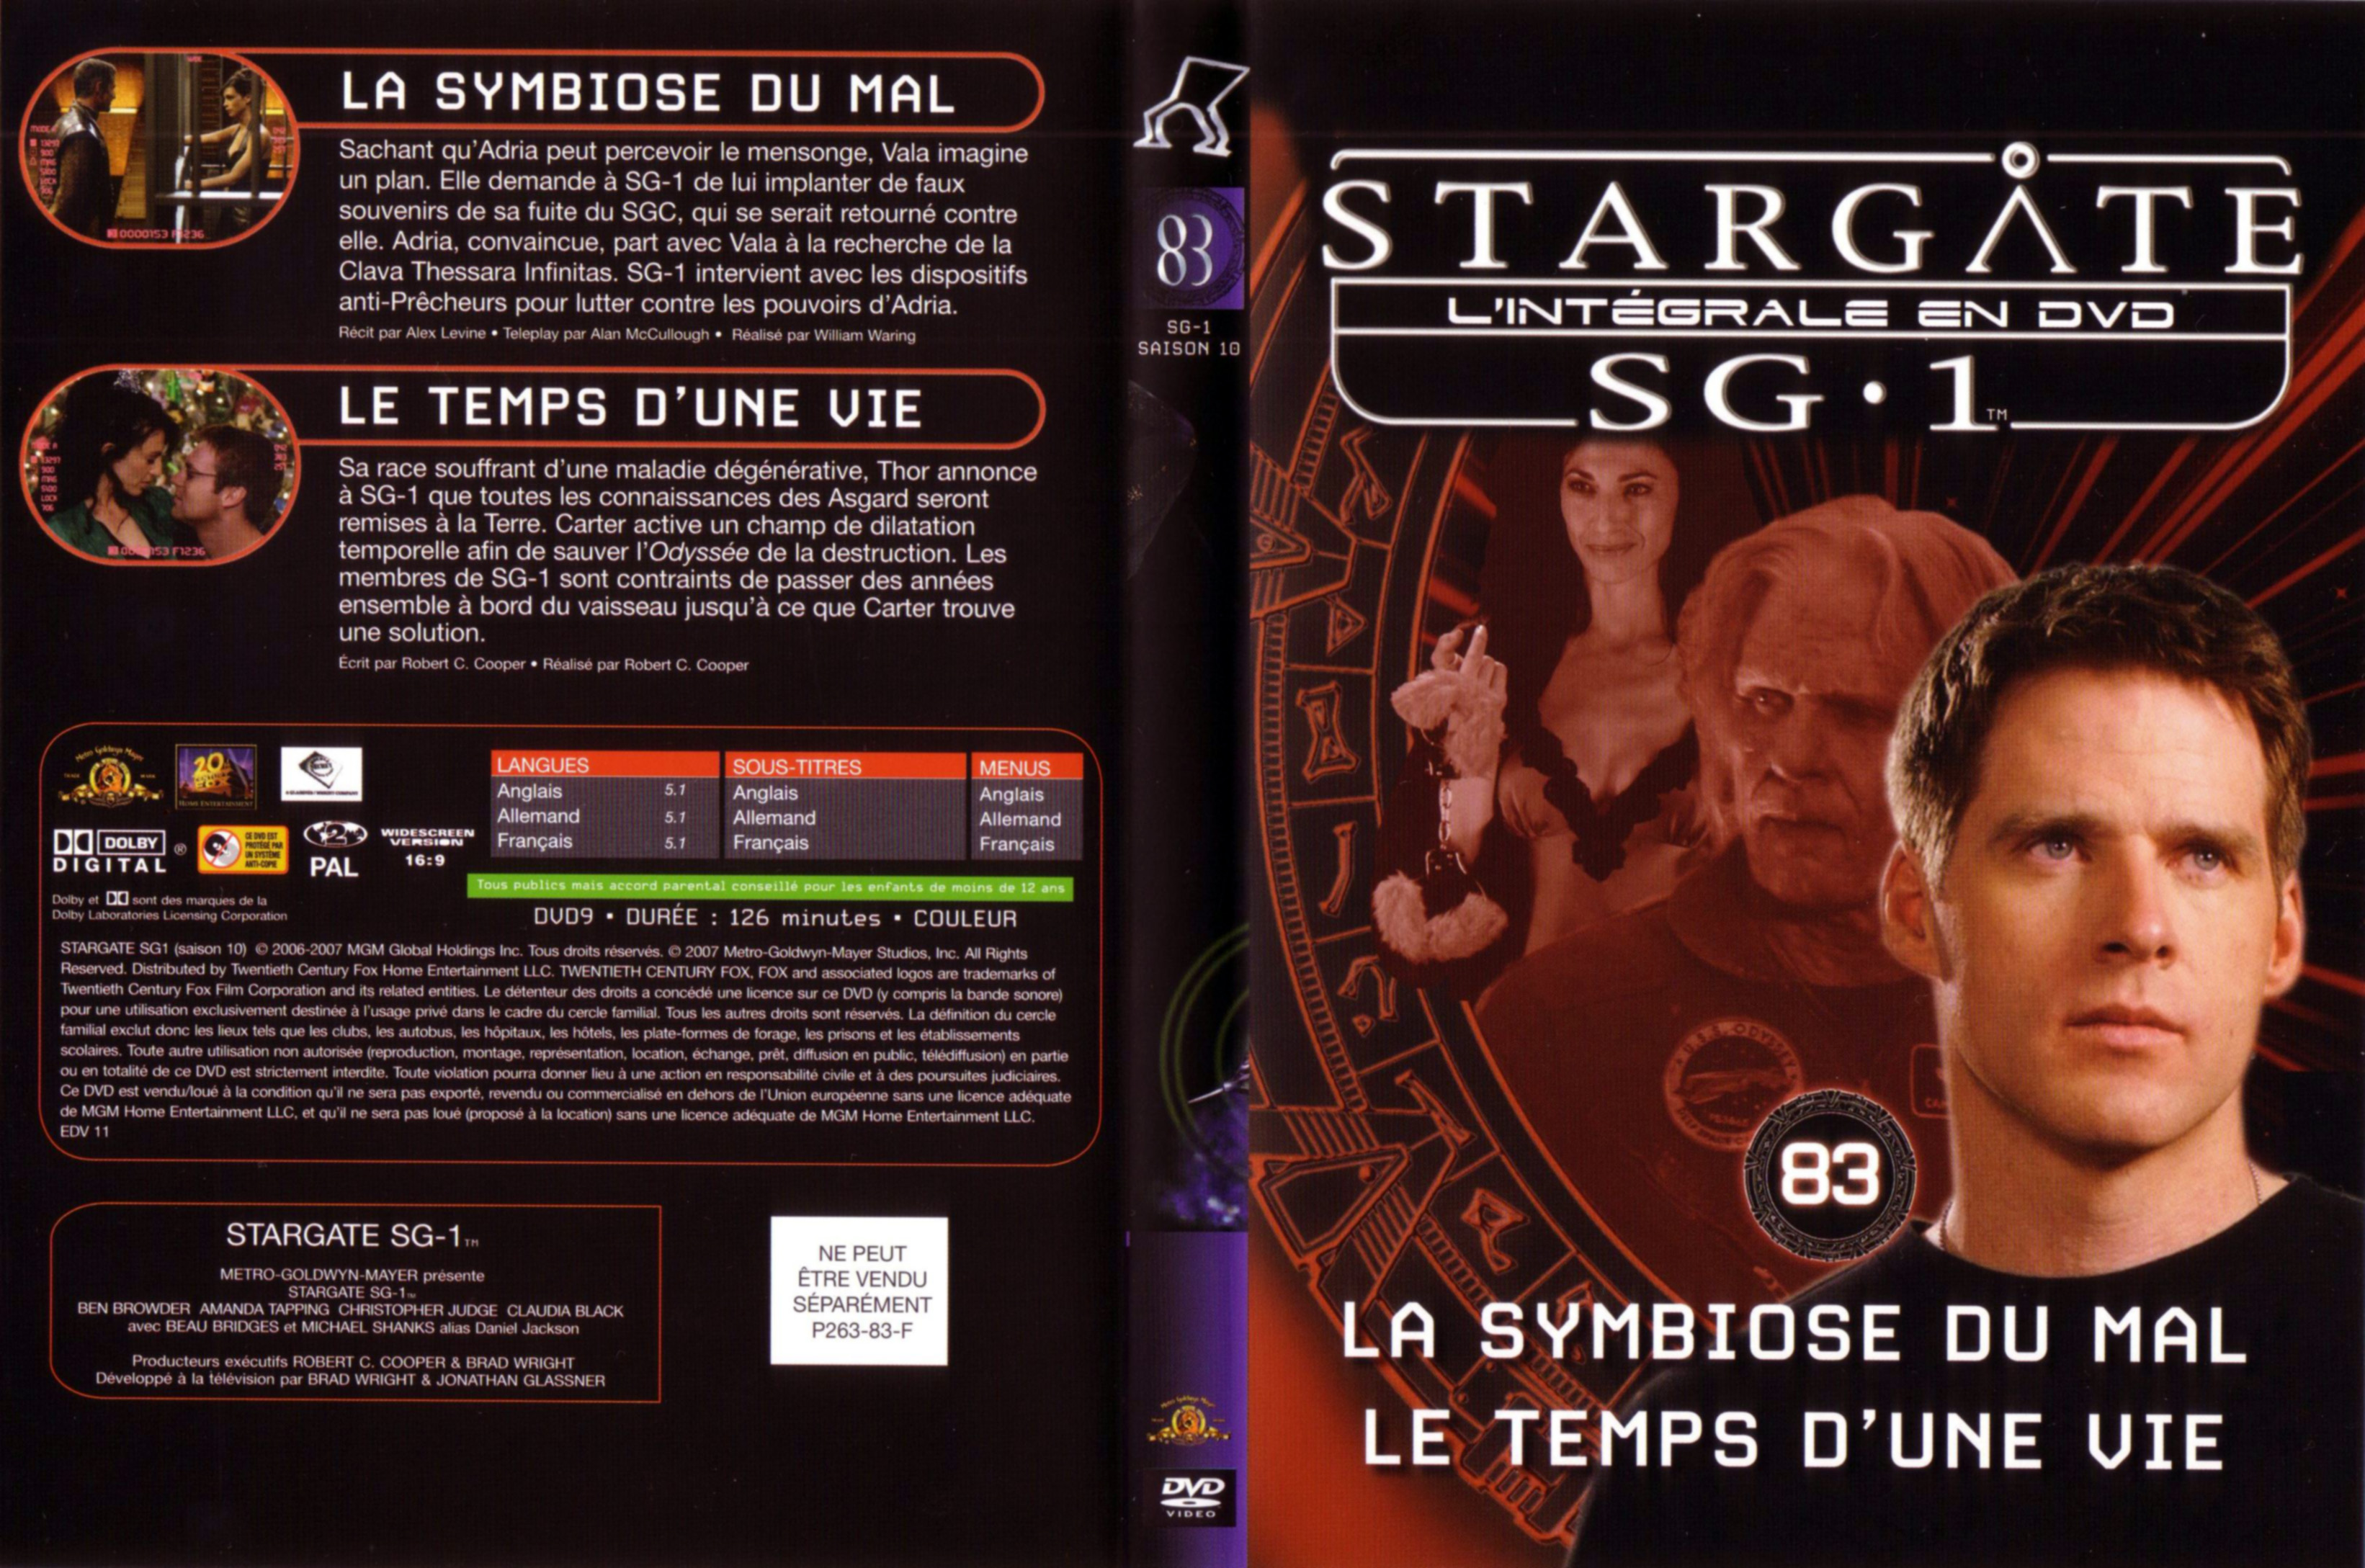 Jaquette DVD Stargate saison 10 vol 83